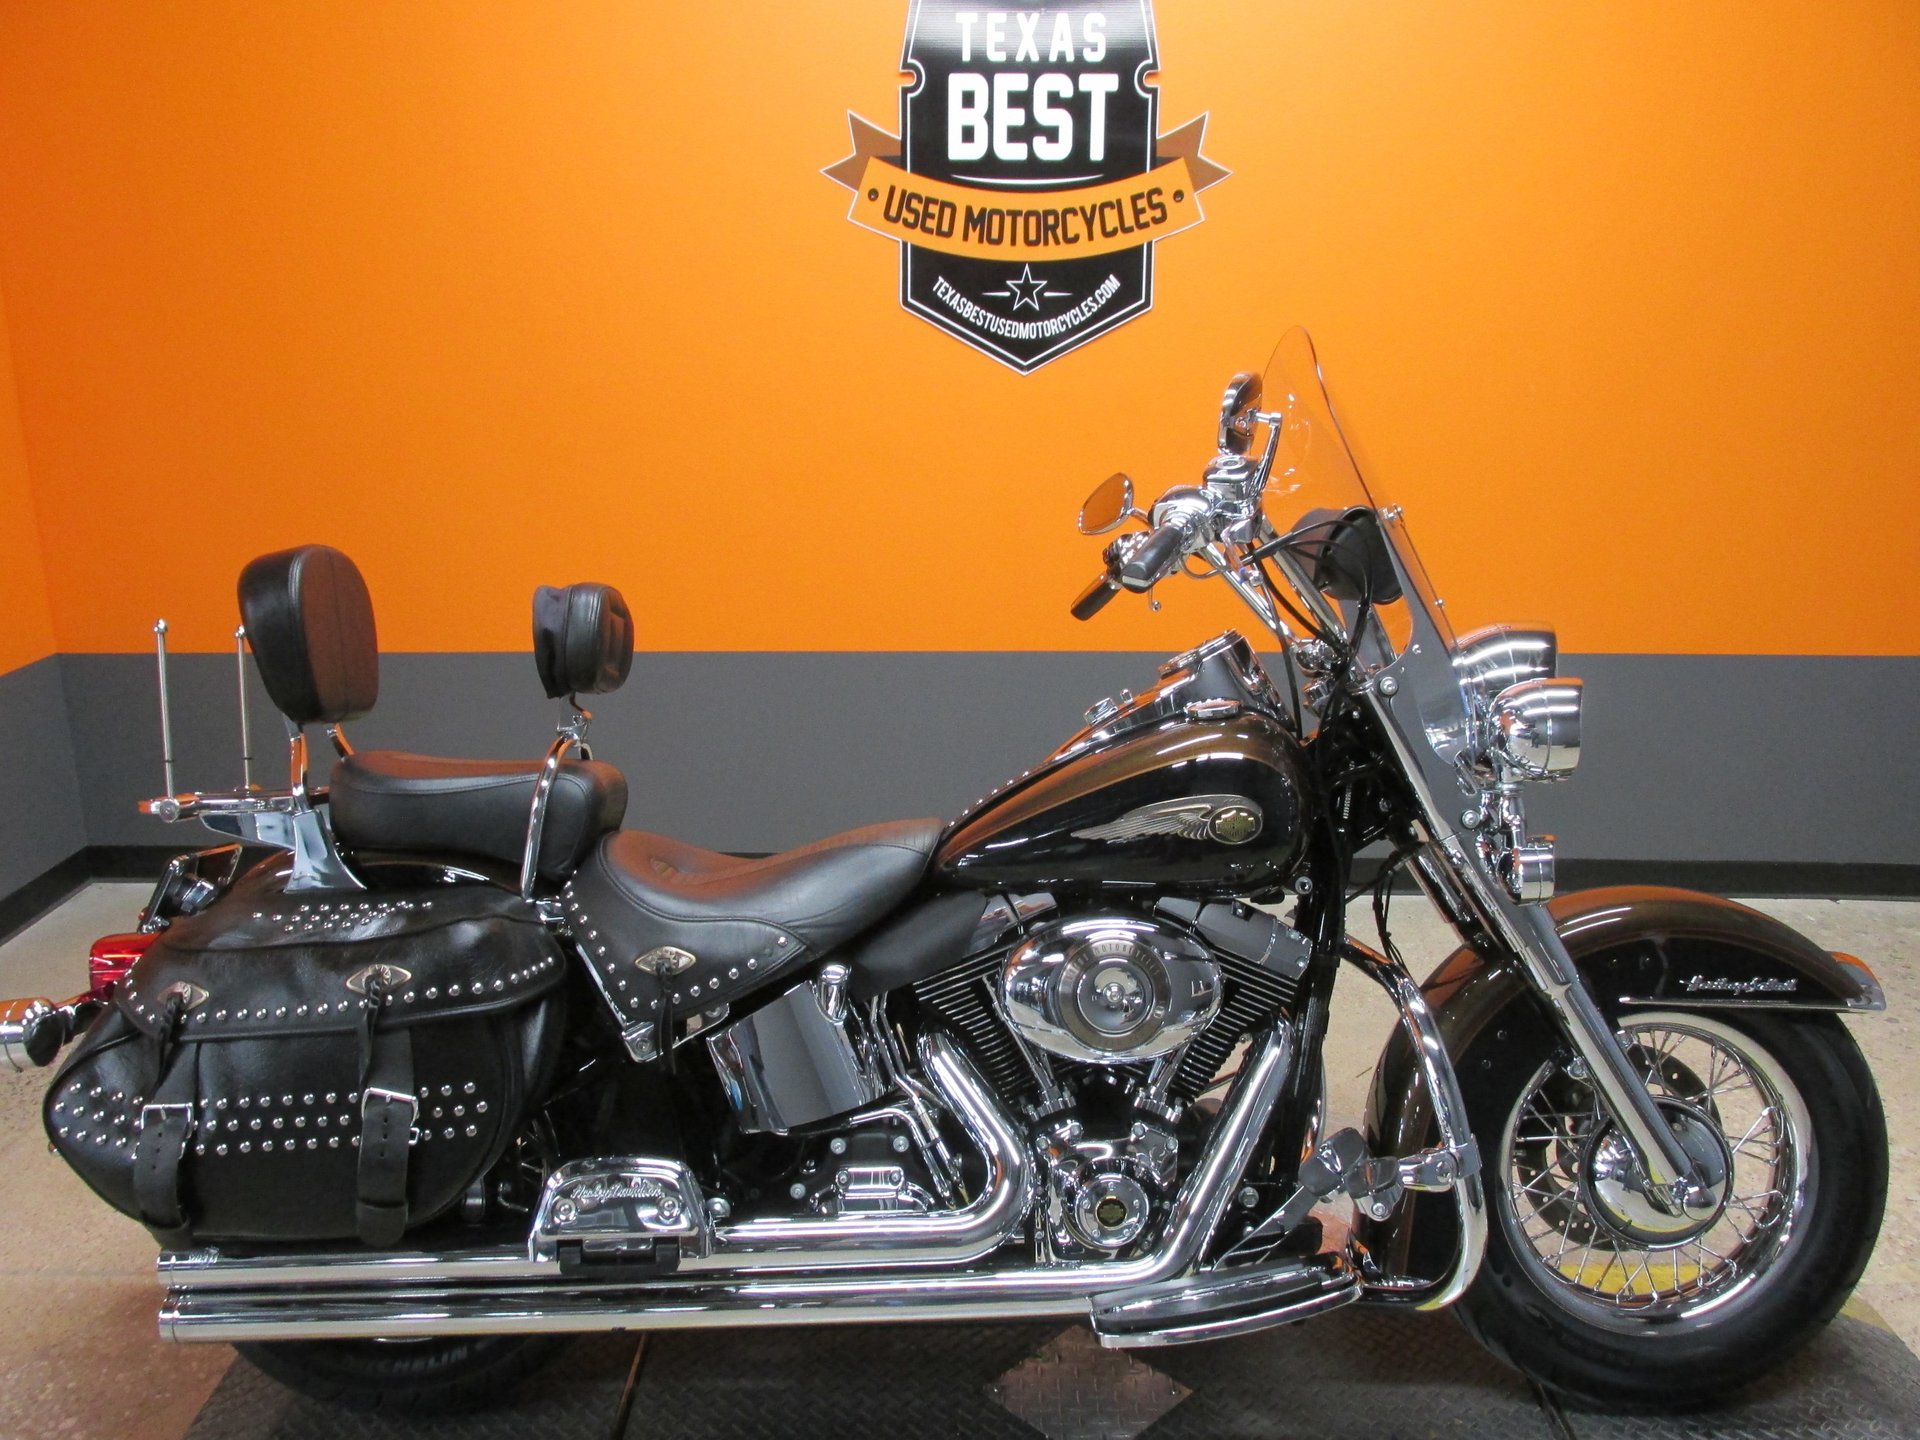 2013 Harley Davidson Heritage Promotion Off54